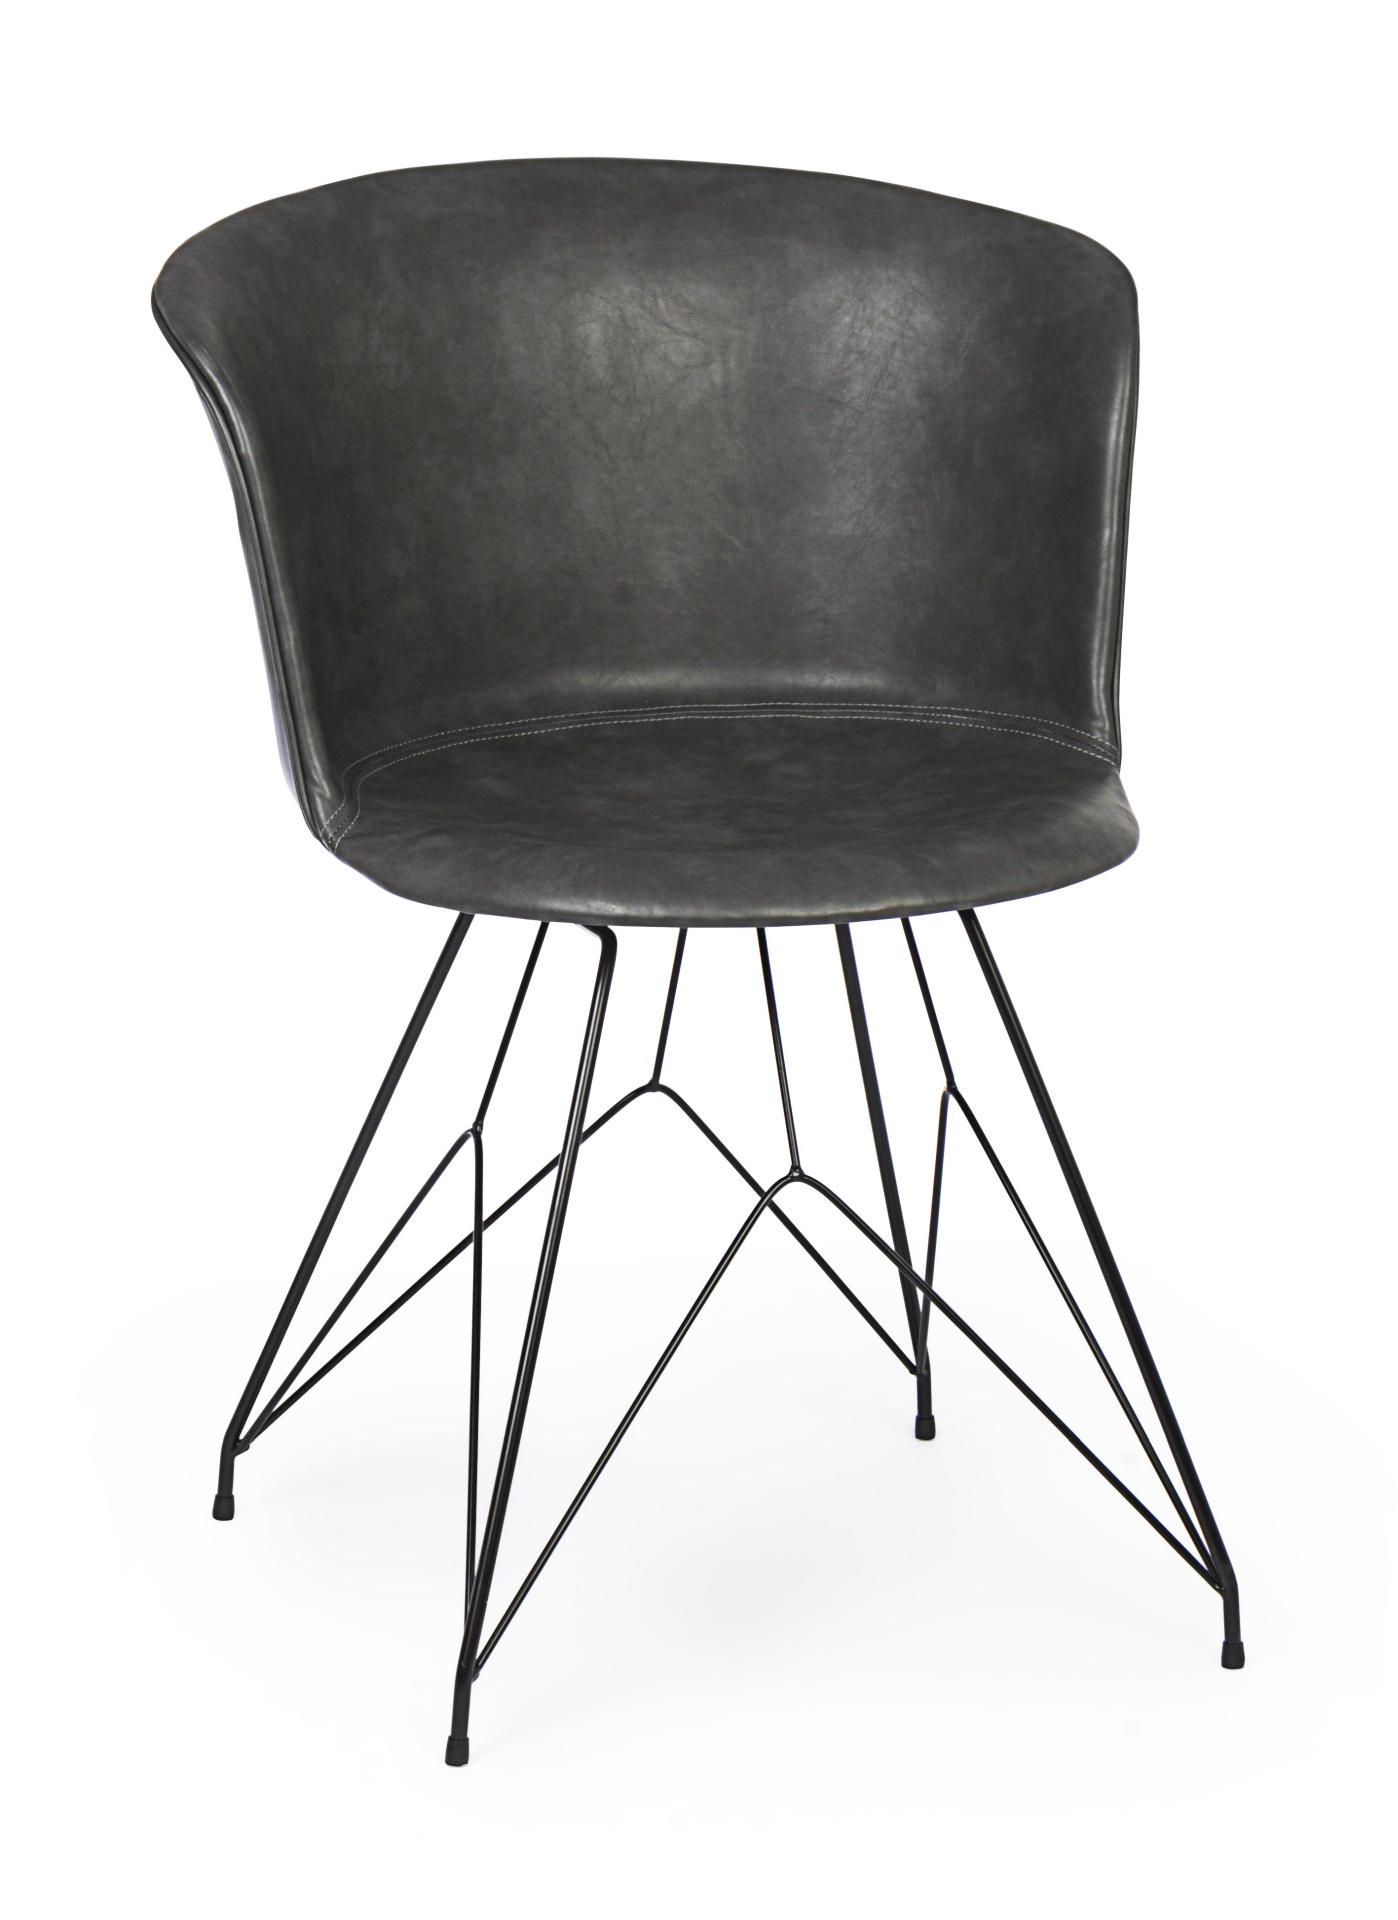 Der Esszimmerstuhl Loft überzeugt mit seinem modernem Design. Gefertigt wurde der Stuhl aus Kunstleder, welches einen Anthrazit Farbton besitzt. Das Gestell ist aus Metall und ist Schwarz. Die Sitzhöhe beträgt 45 cm.